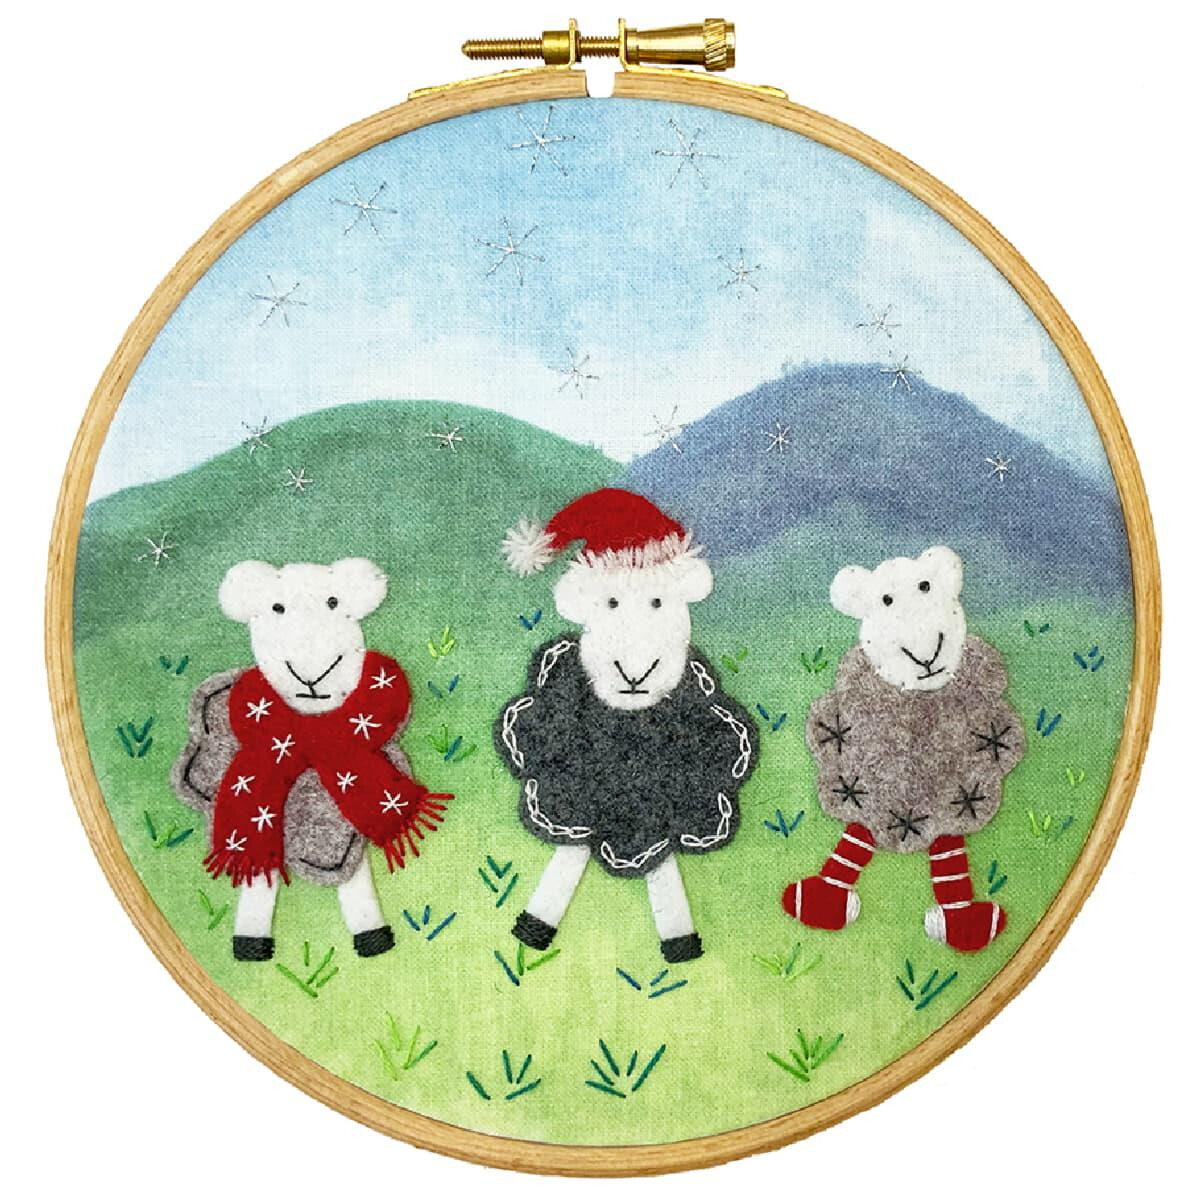 Un telaio da ricamo mostra tre pecore in un paesaggio...